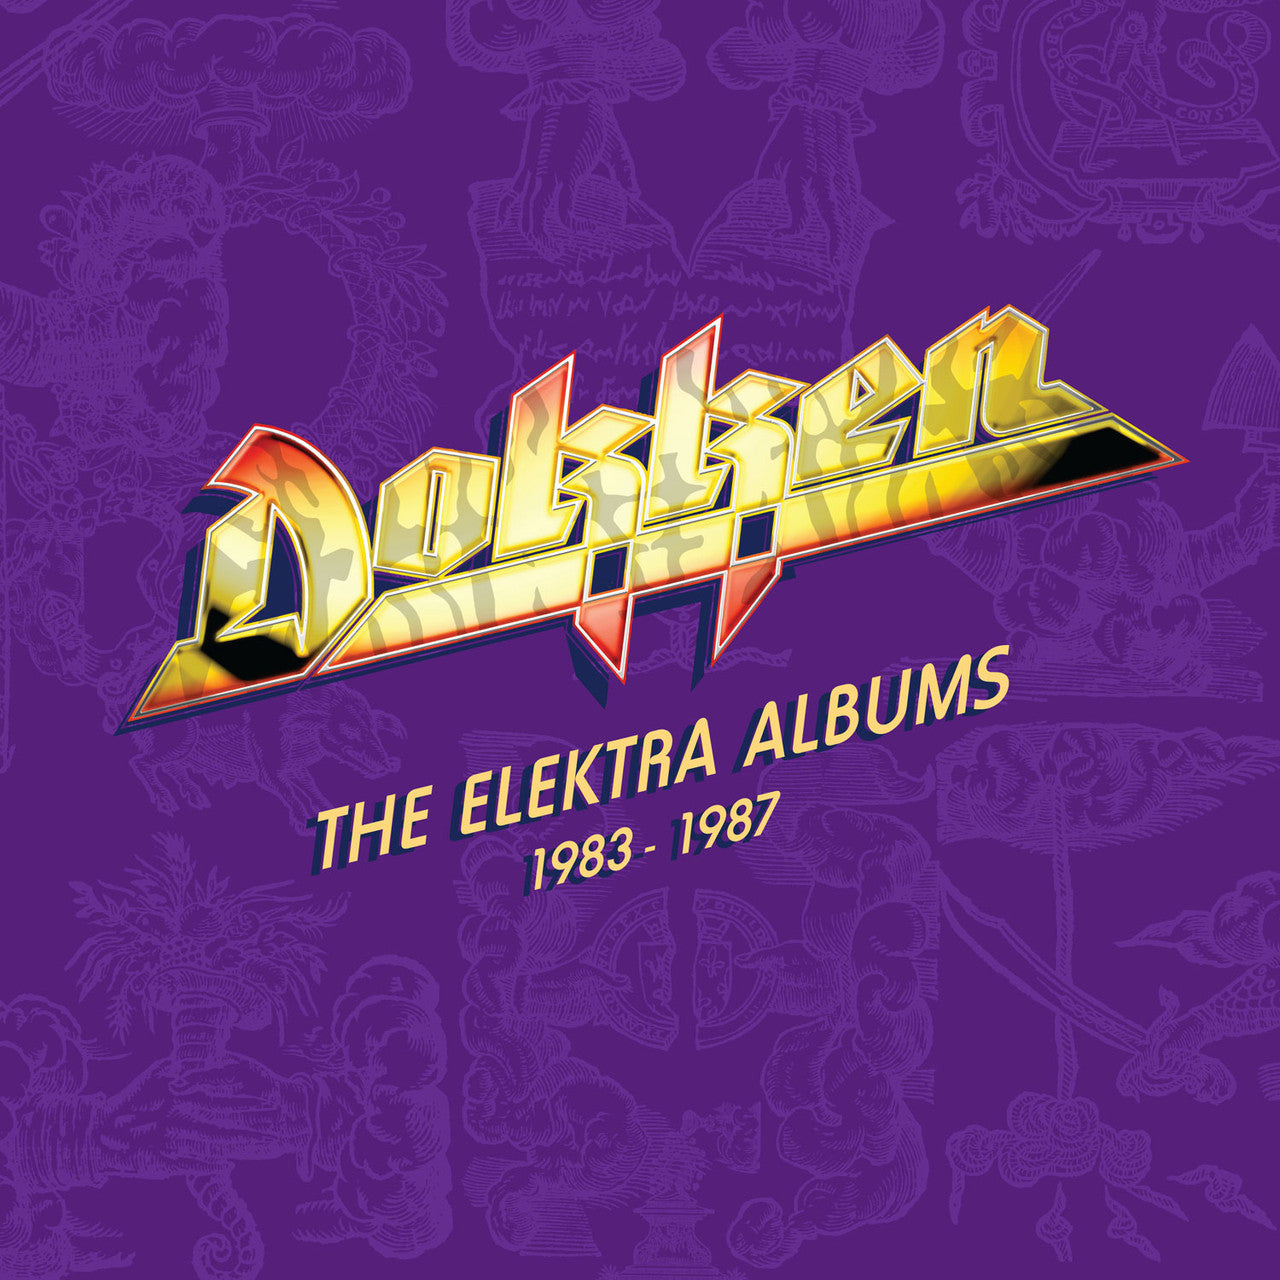 Order Dokken - The Elektra Albums 1983-1987 (Limited Edition, 180 Gram 5LP Vinyl Box Set)